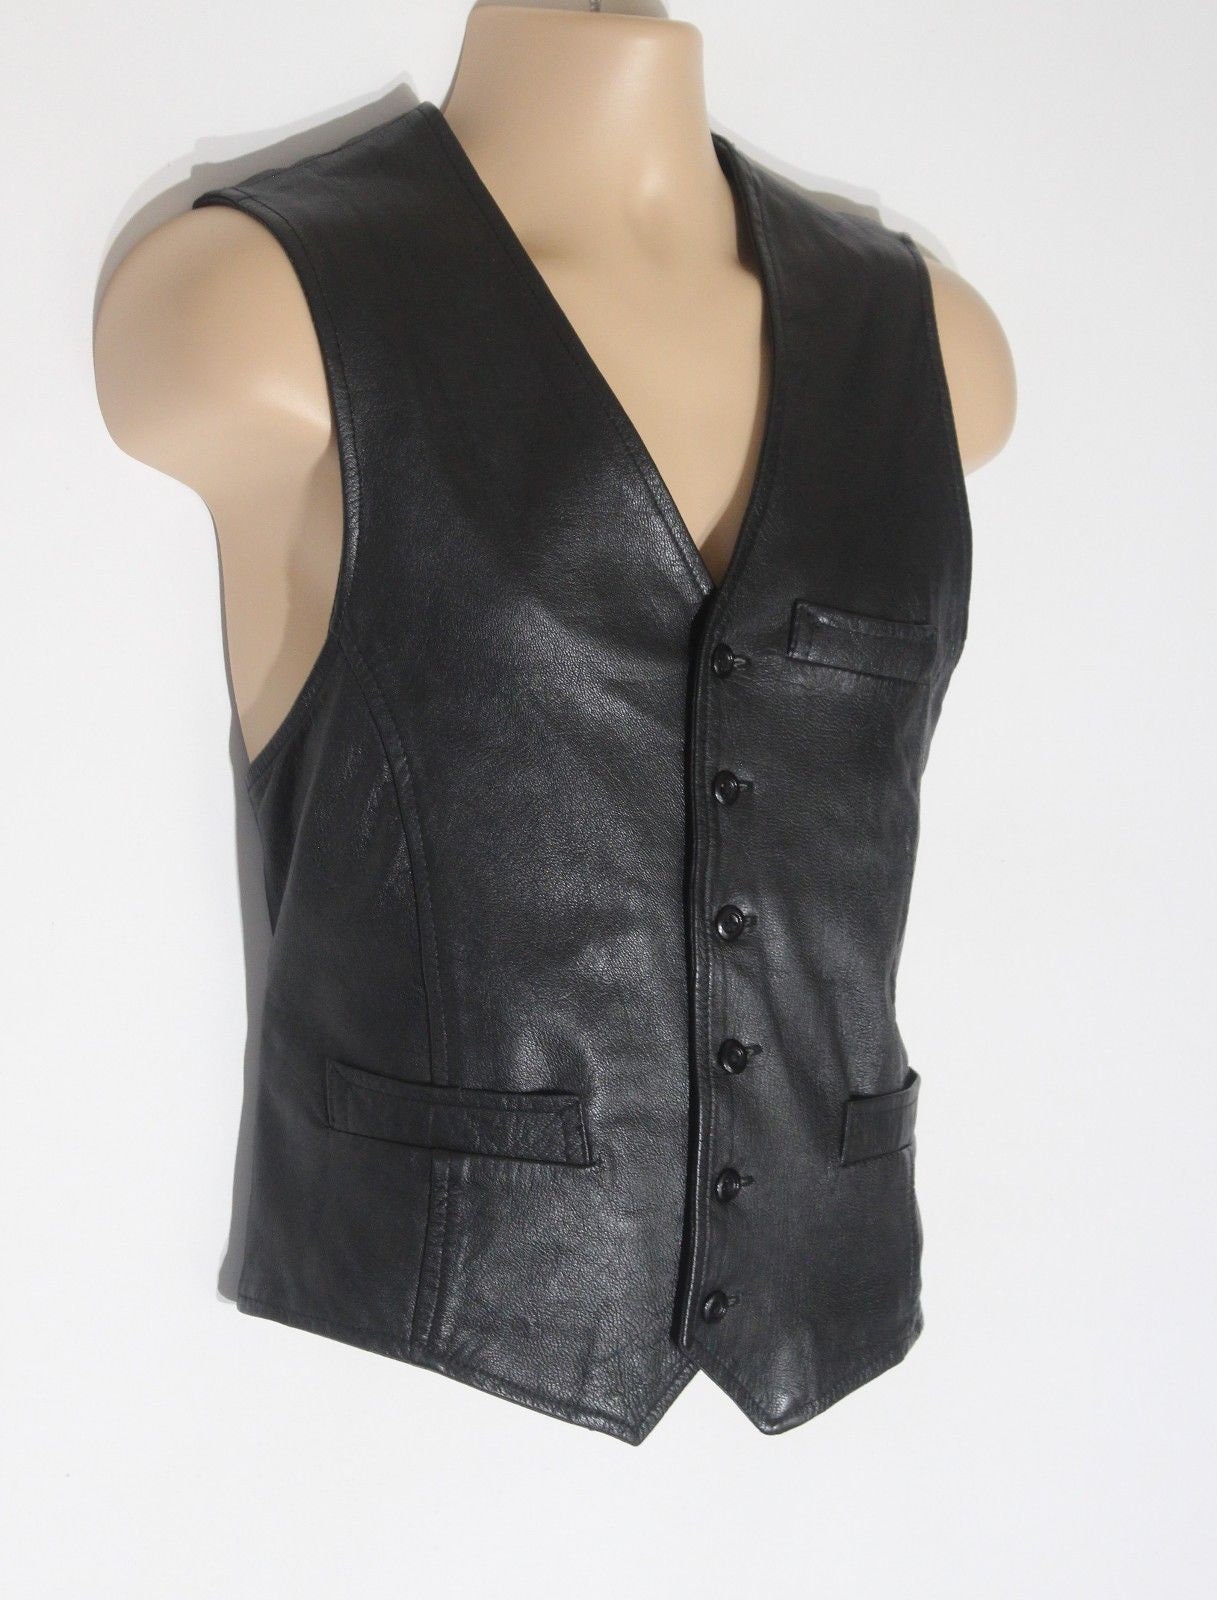 Men's Vintage Black 100% Leather Waistcoat Vest Size M Pit | Etsy